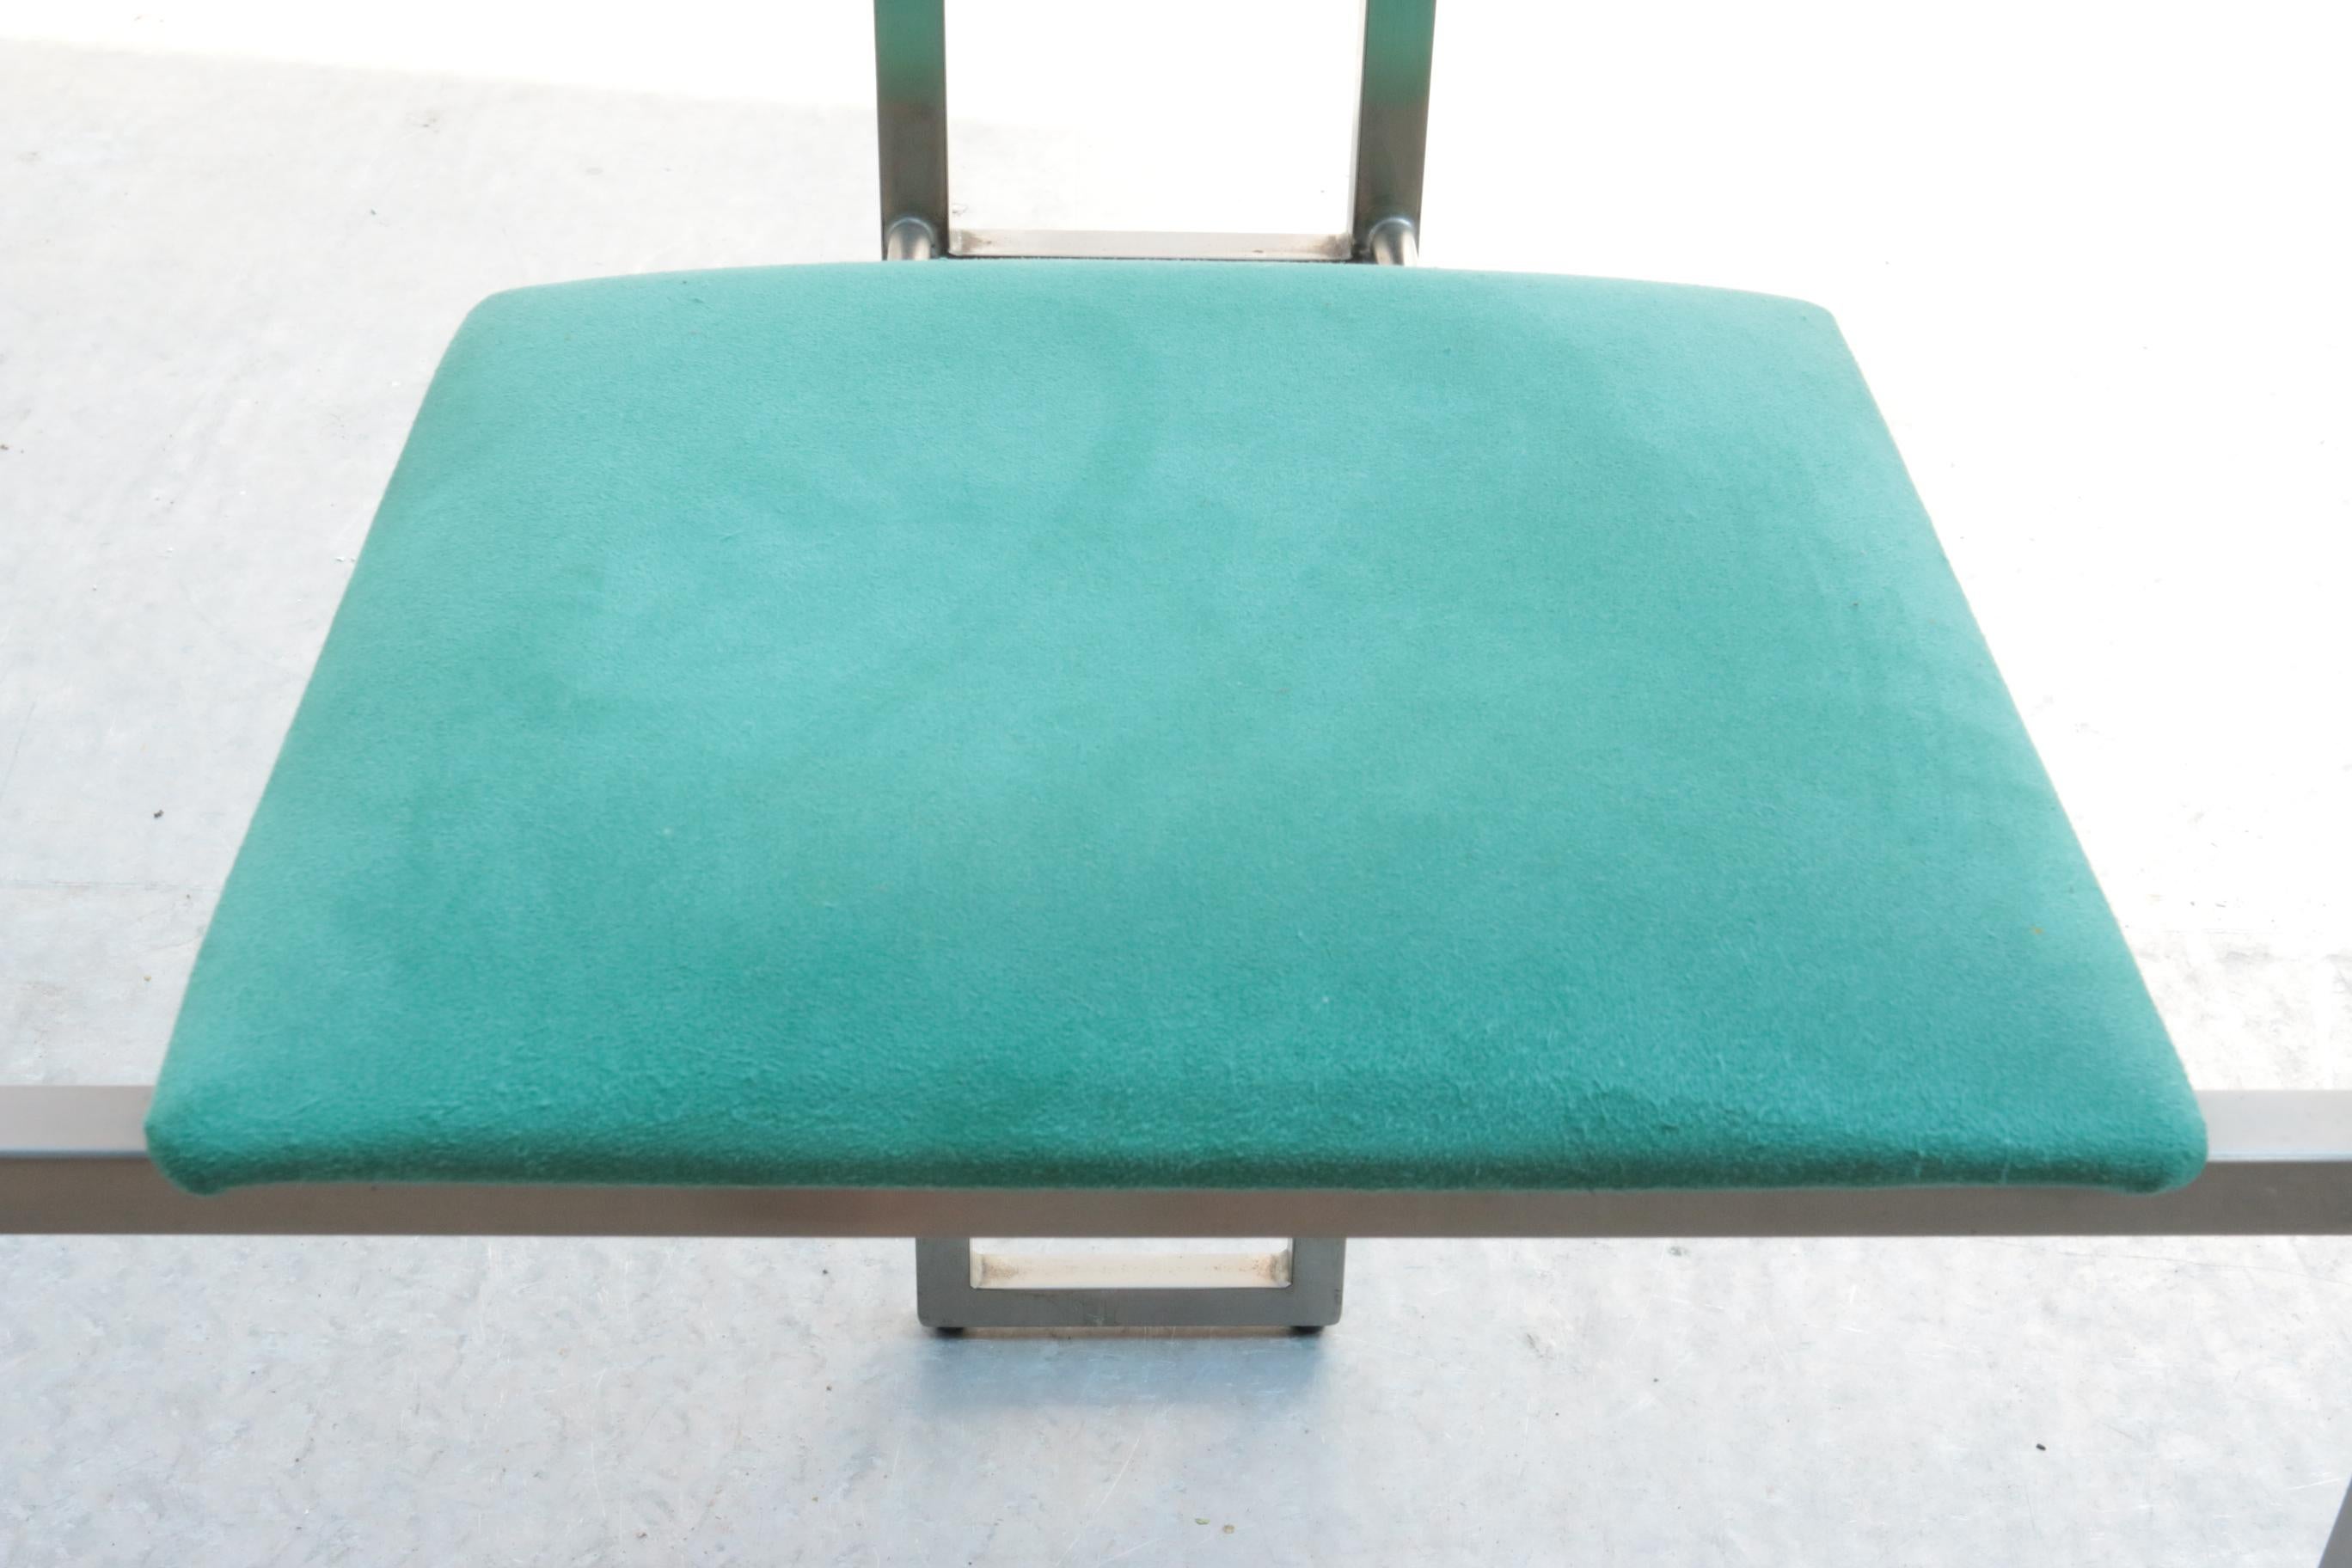 Stühle im Memphis Milano-Stil von Belgo Chrom aus den 1980er Jahren.
Auch ein schöner Schreibtischstuhl

Der grüne Stoff ist Alcantra, die Rückseite ist mit einem ovalen Stück schwarzem Leder verziert
Sowohl der Stahlrahmen als auch die Polsterung